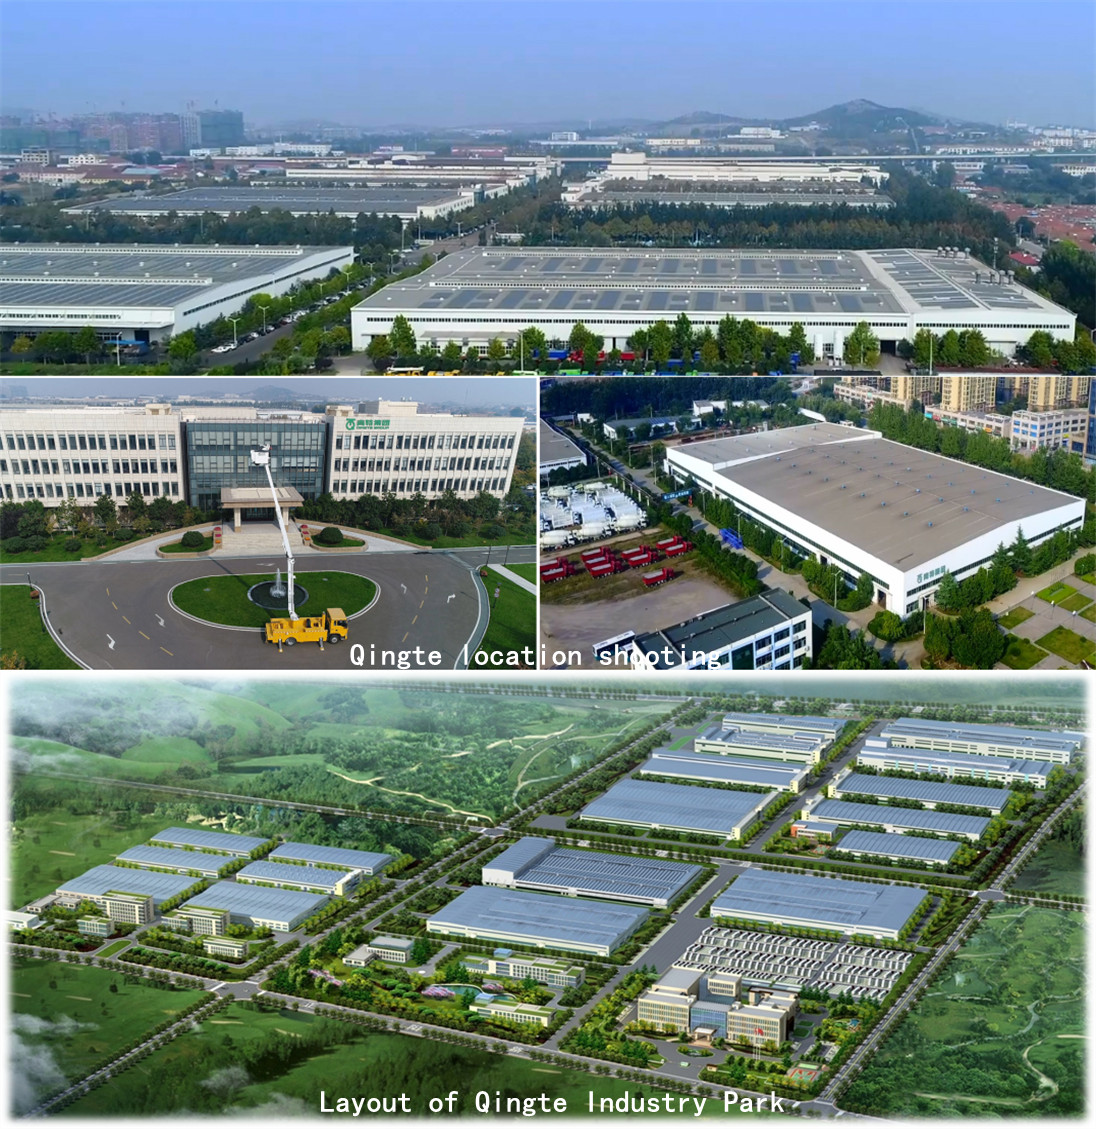 Grupul Qingte se află în „Cele mai bune 100 întreprinderi de piese auto din China” timp de șapte ani consecutivi.